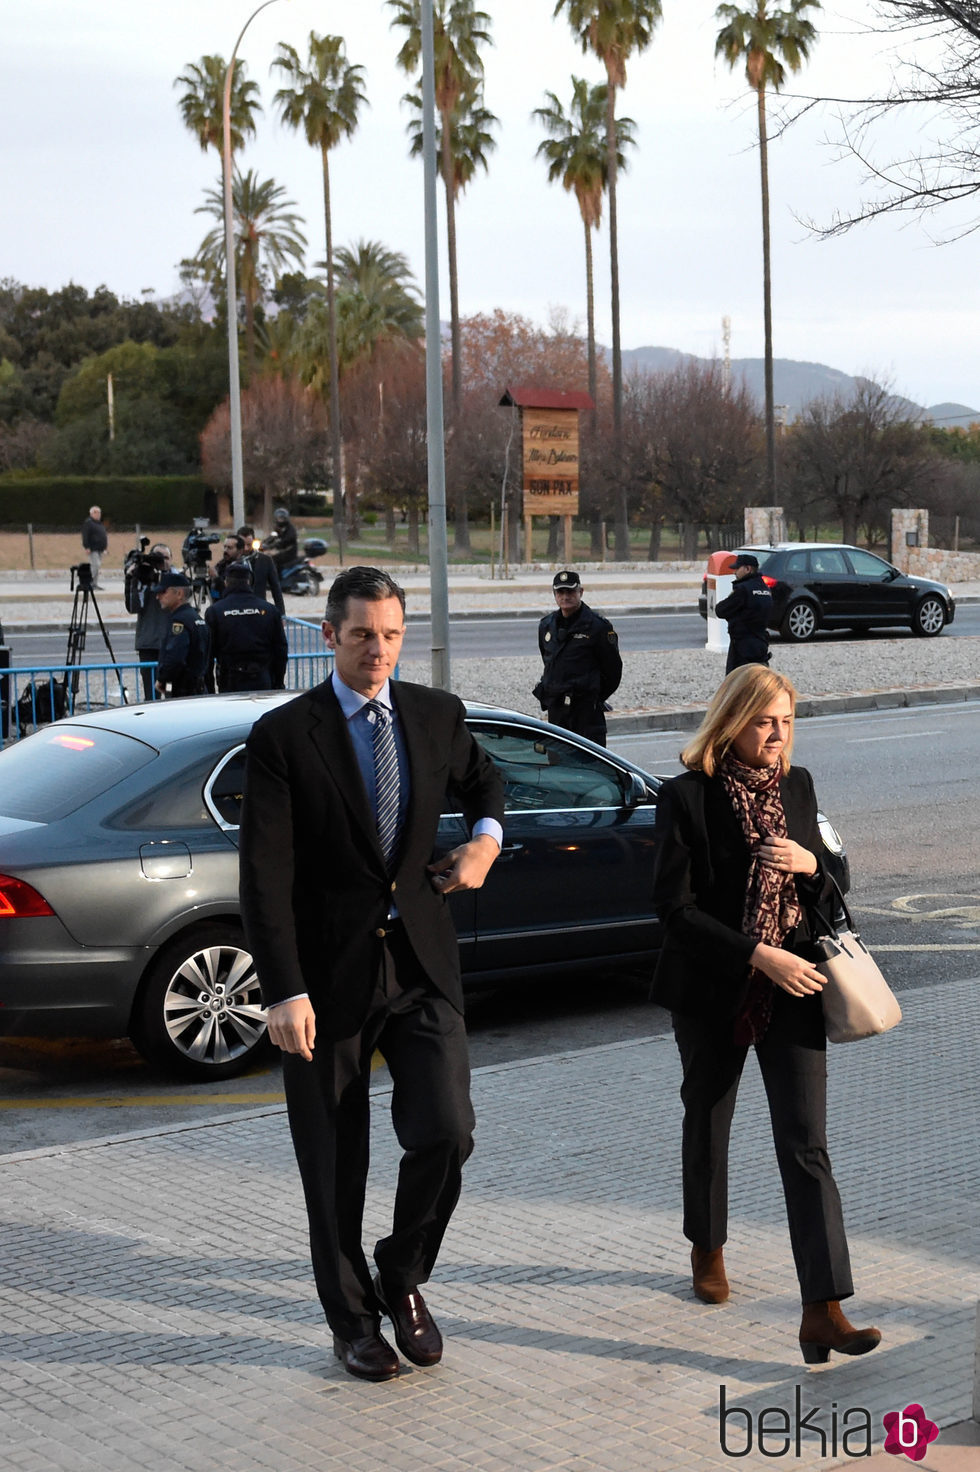 La Infanta Cristina e Iñaki Urdangarín al salir del coche para entrar en el juicio por el Caso Nóos